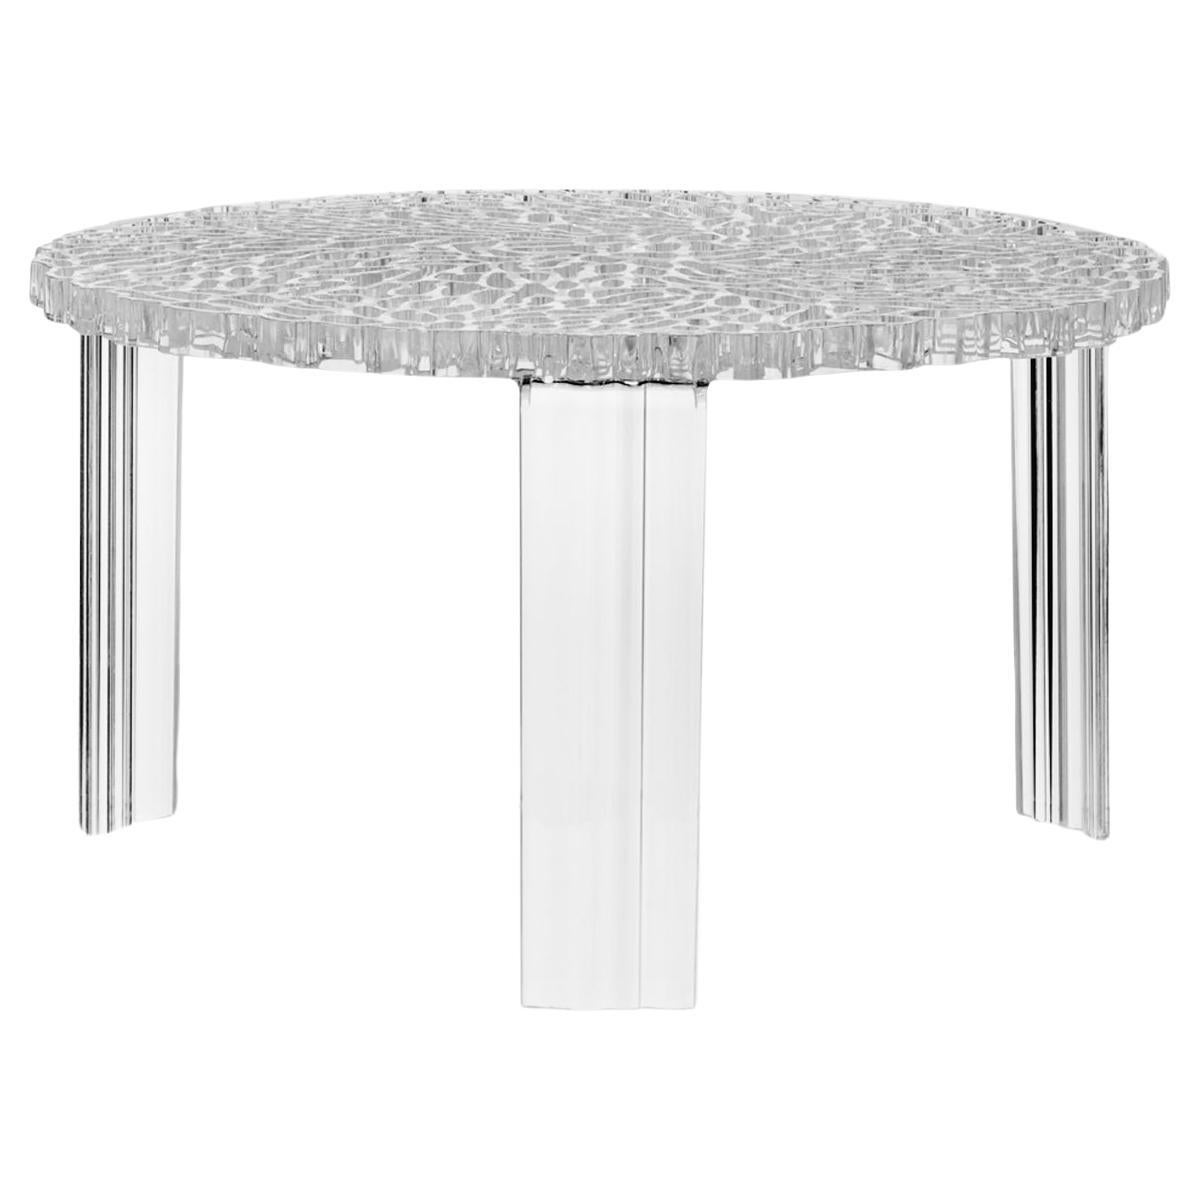 Une gamme de tables en trois hauteurs. La surface du plateau de la table T alterne le plein et l'espace pour créer un effet élégant et précieux qui rappelle la broderie.

Il existe en 3 hauteurs différentes.